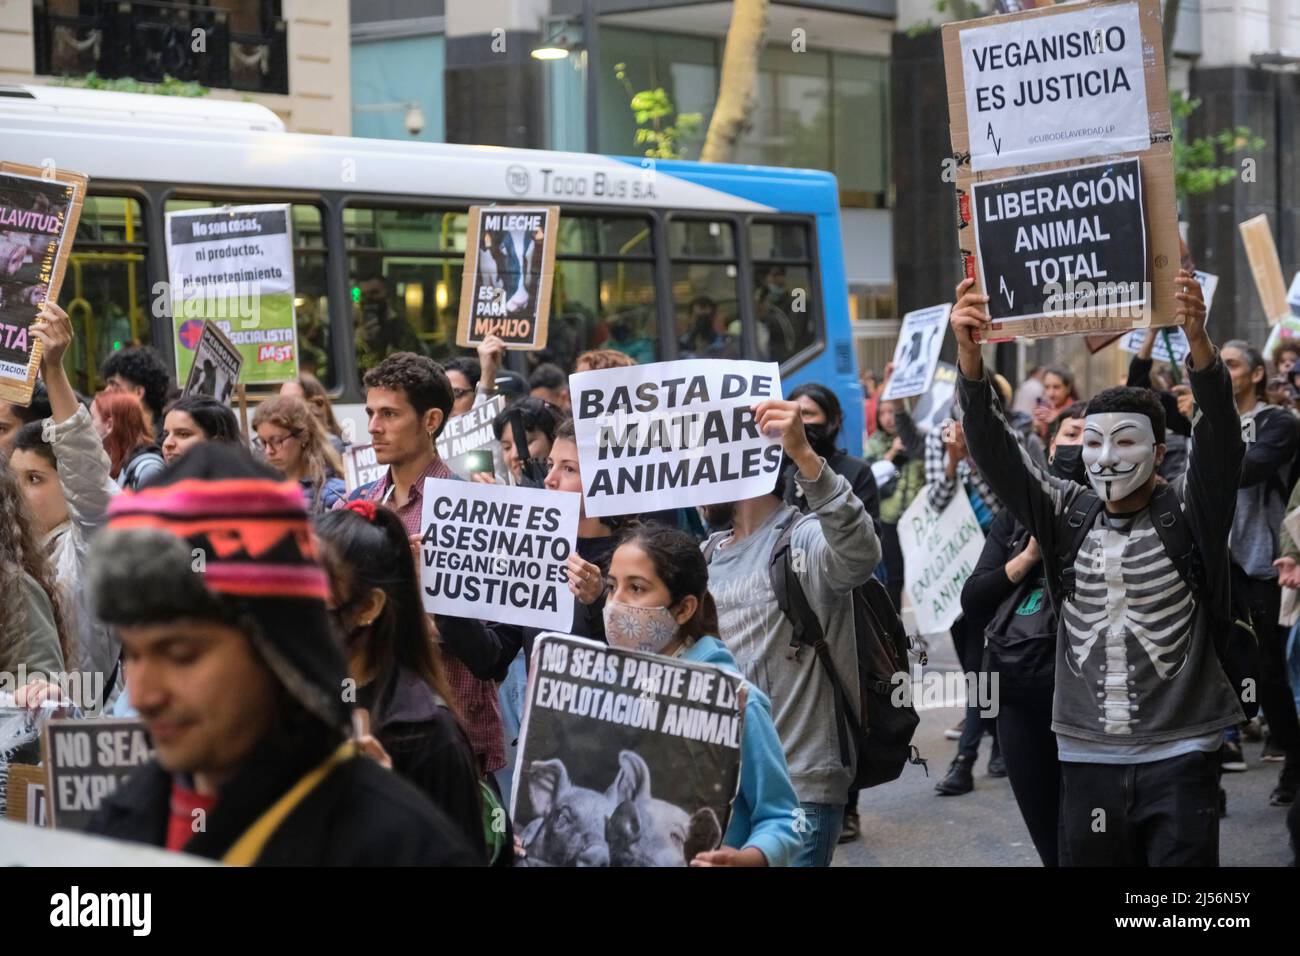 Buenos Aires, Argentine; 1 novembre 2021: Journée mondiale des Vega. Les gens défilent en portant des signes avec des messages animalistes : cessez de tuer des animaux. Lébre animal total Banque D'Images